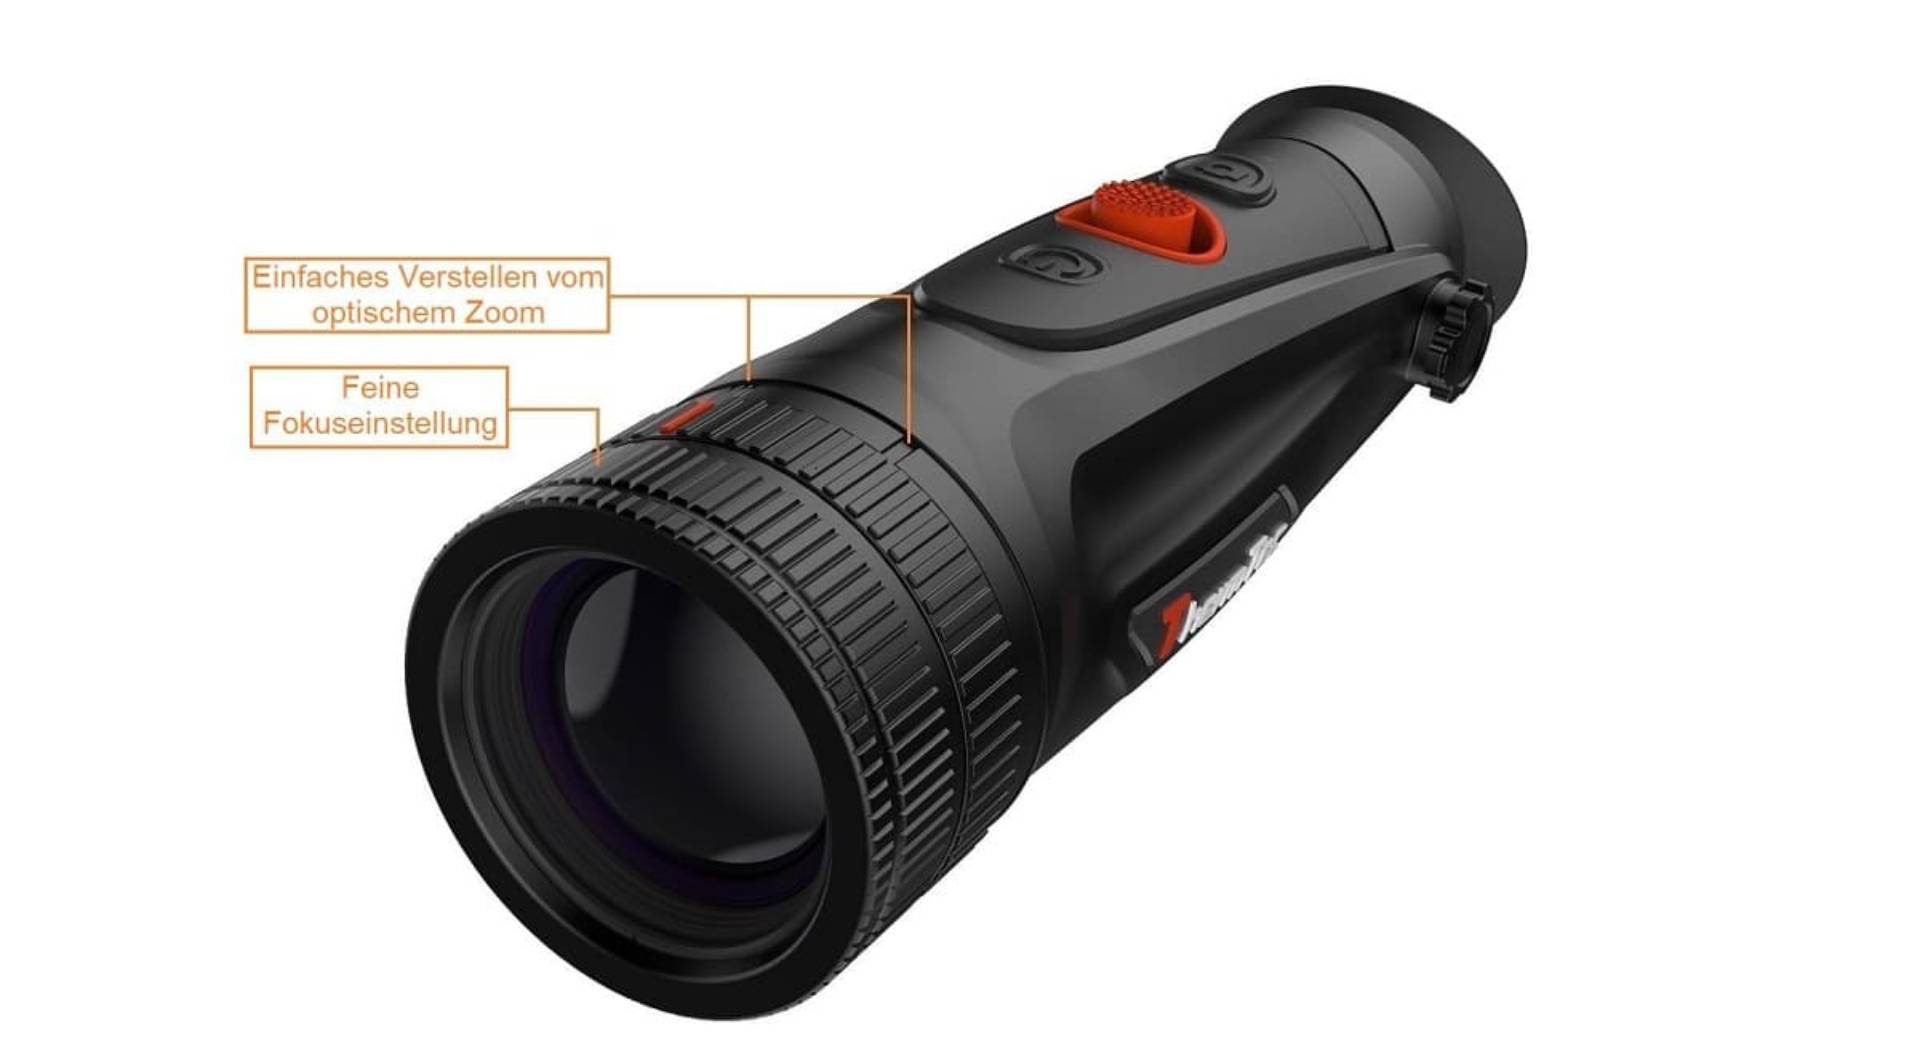 Thermtec Cyclops 340D Wärmebildkamera  - mit Dual Zoom 